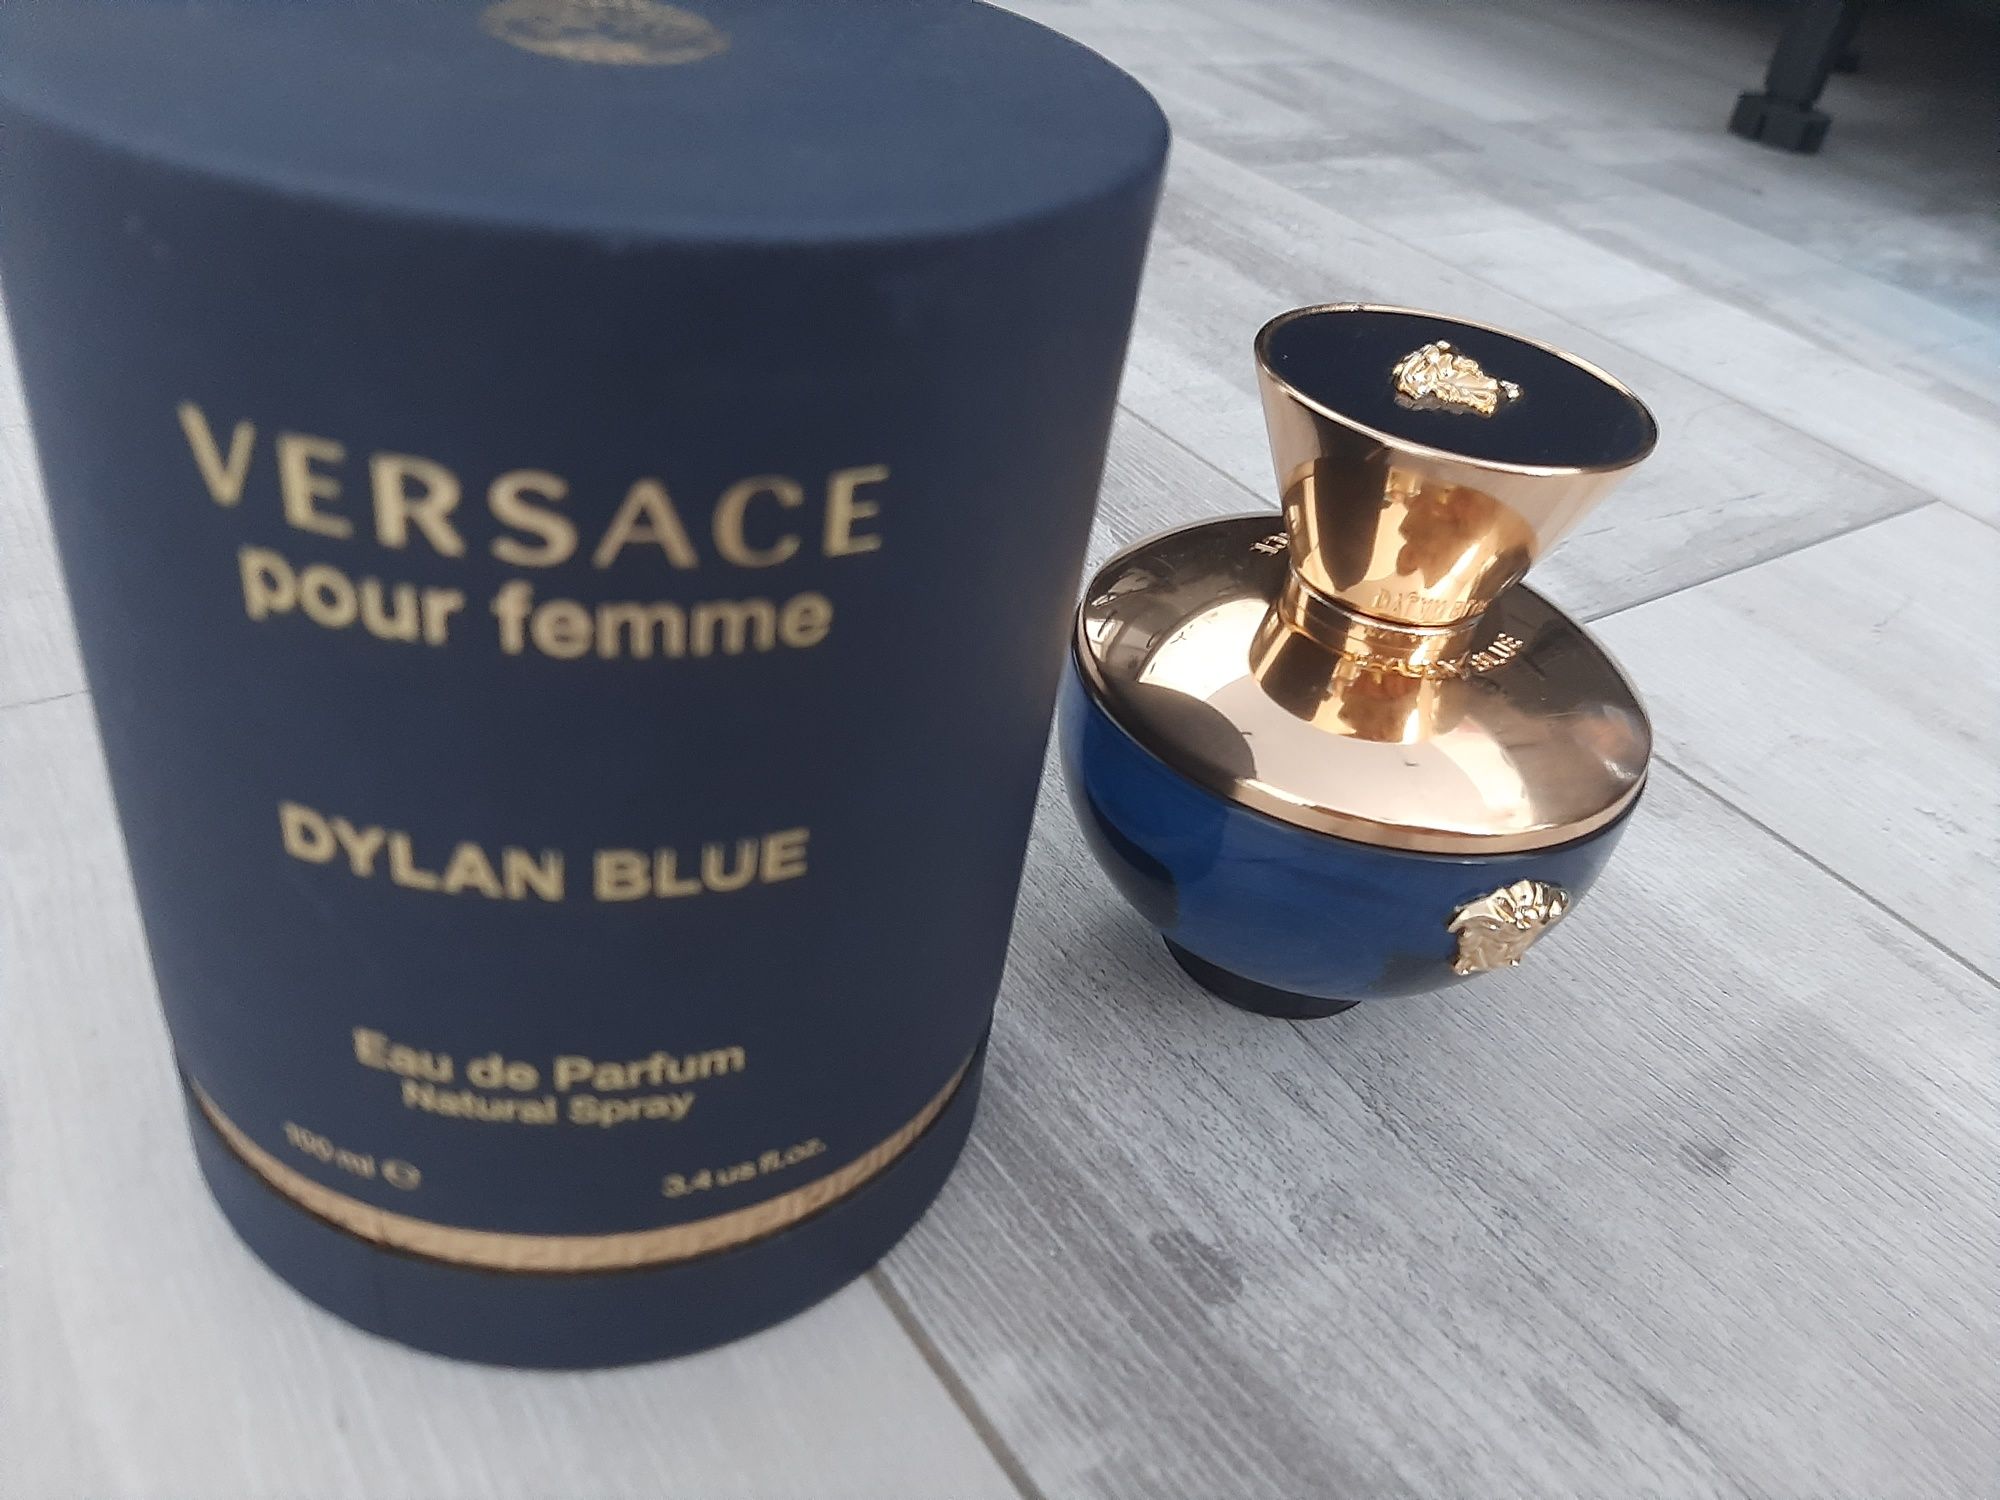 Духи Versace Dylan Blue шикарные,с США Америка!Оригинал 10000!Скидка!